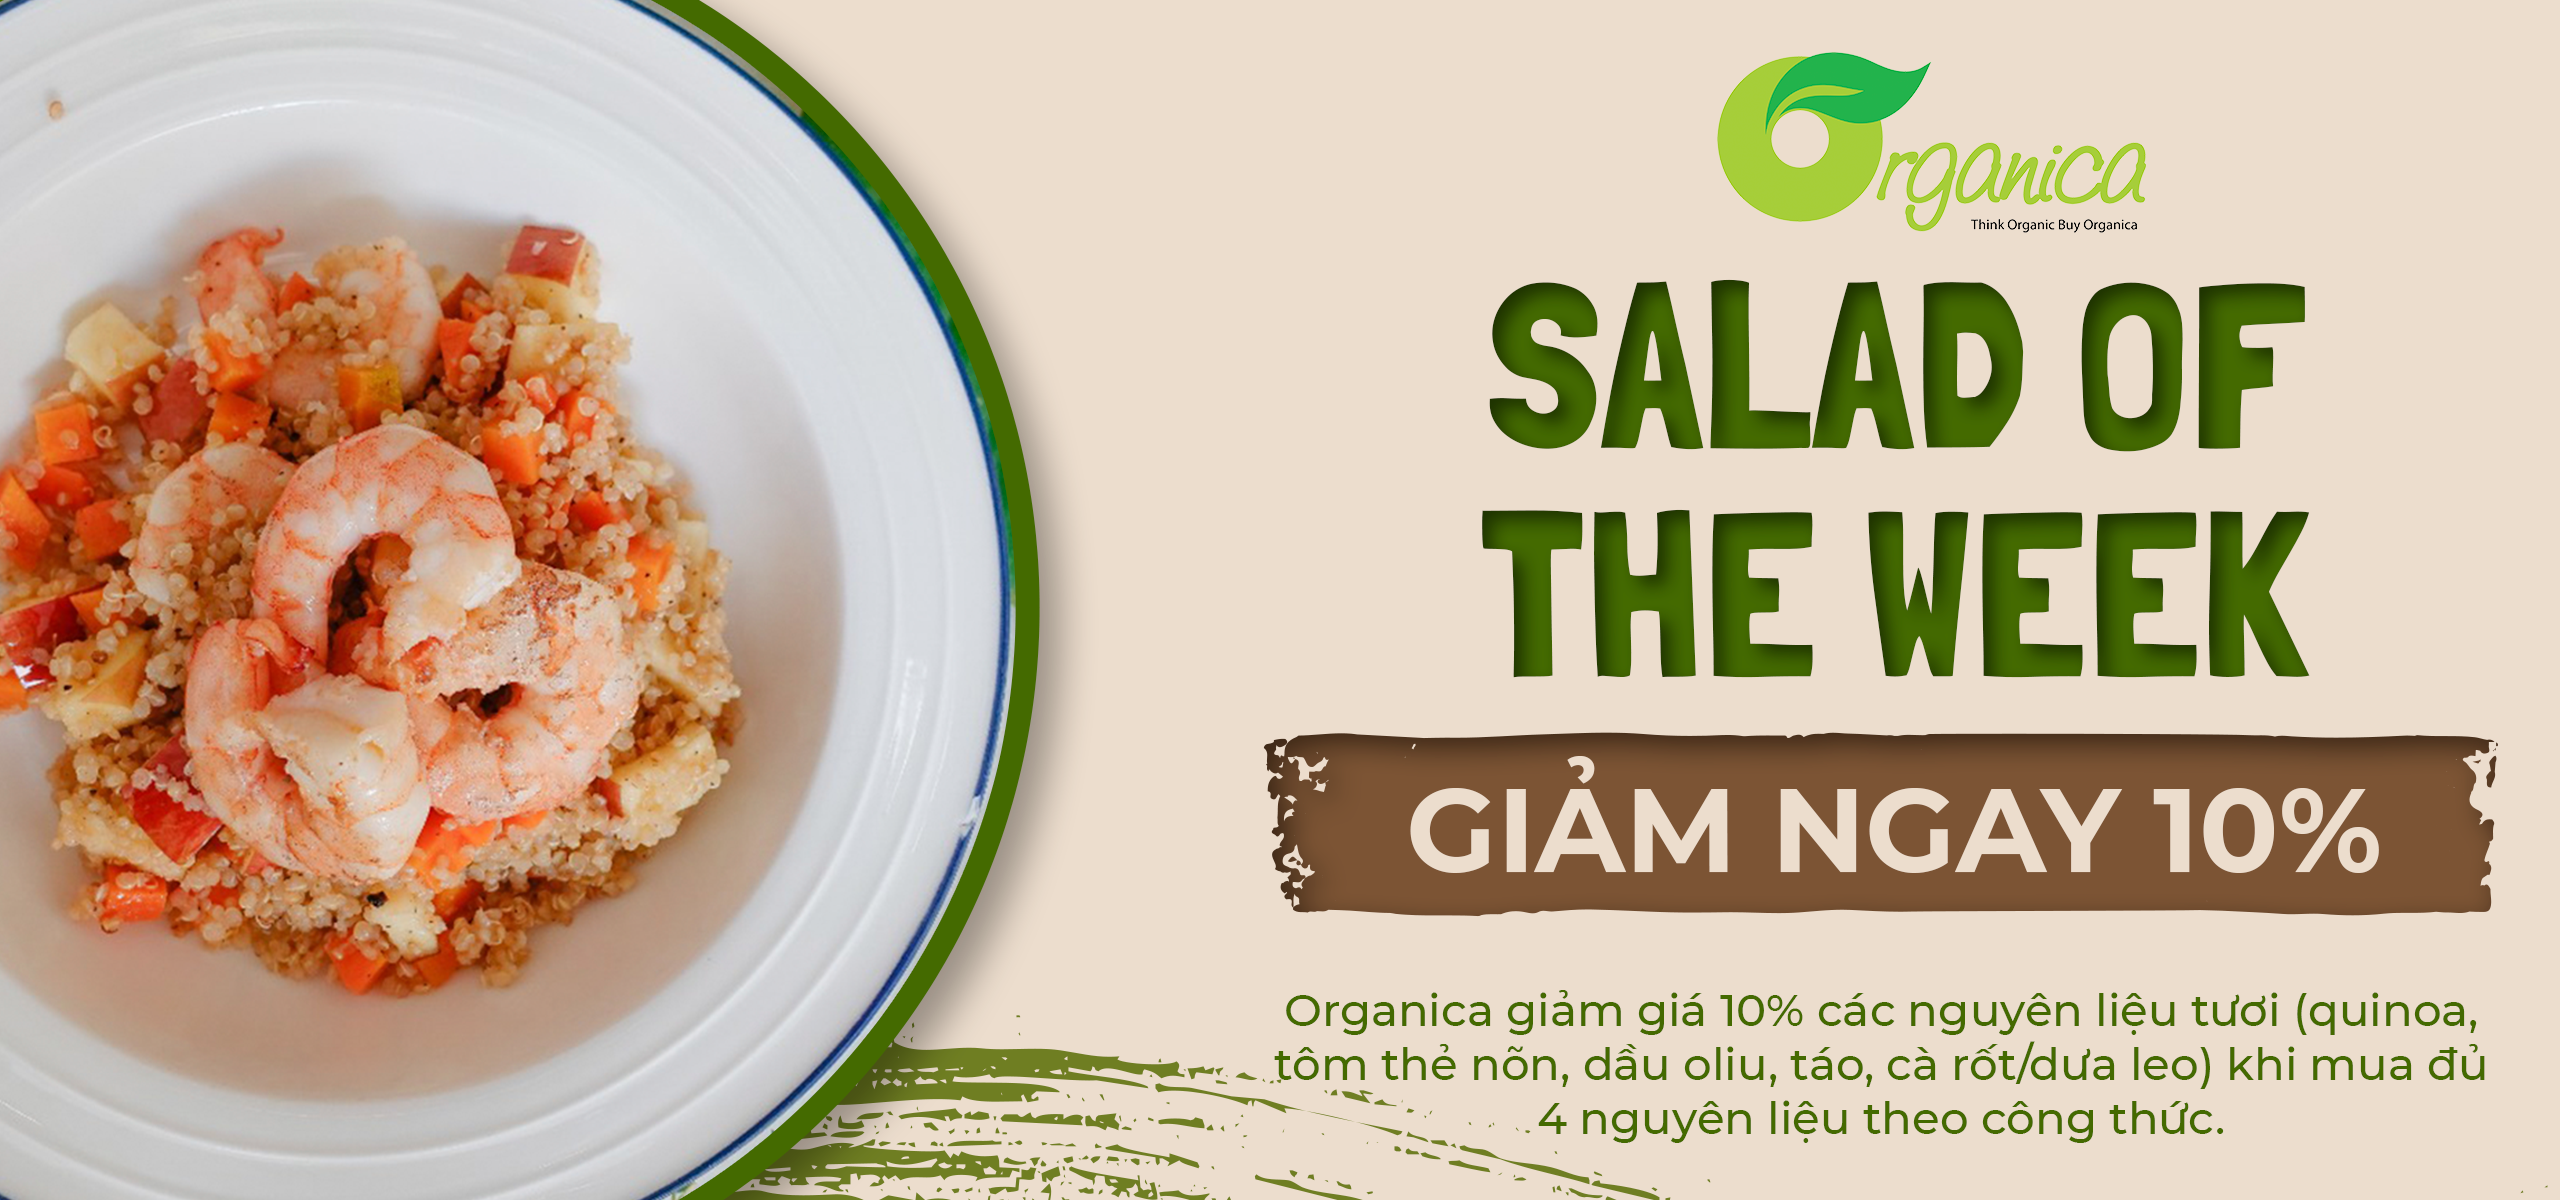 “Công thức của tuần: salad quinoa”.